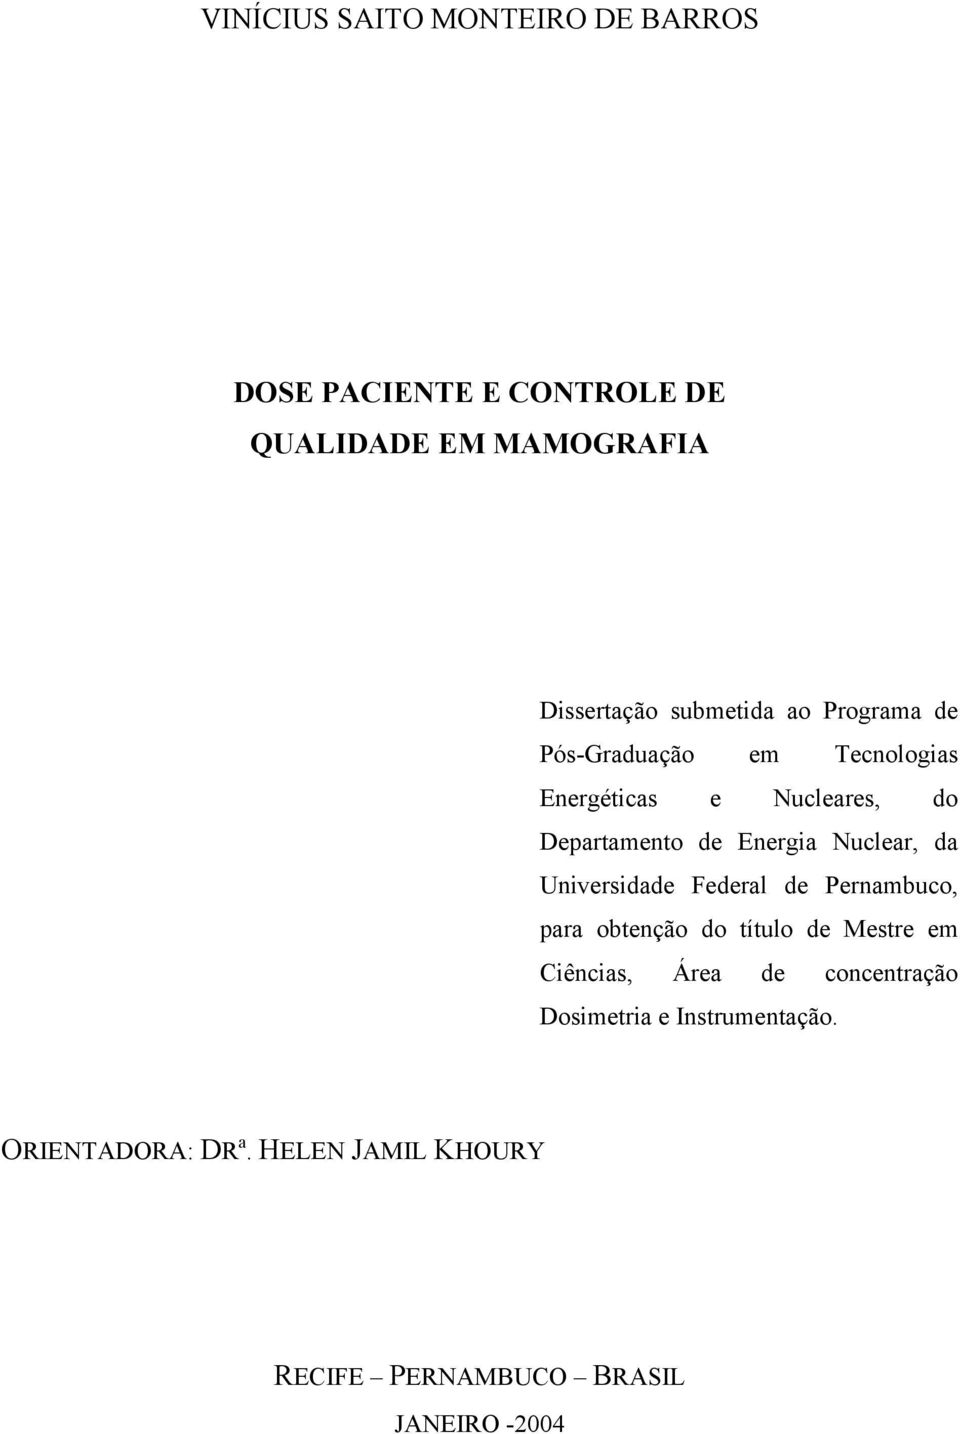 Nuclear, da Universidade Federal de Pernambuco, para obtenção do título de Mestre em Ciências, Área de